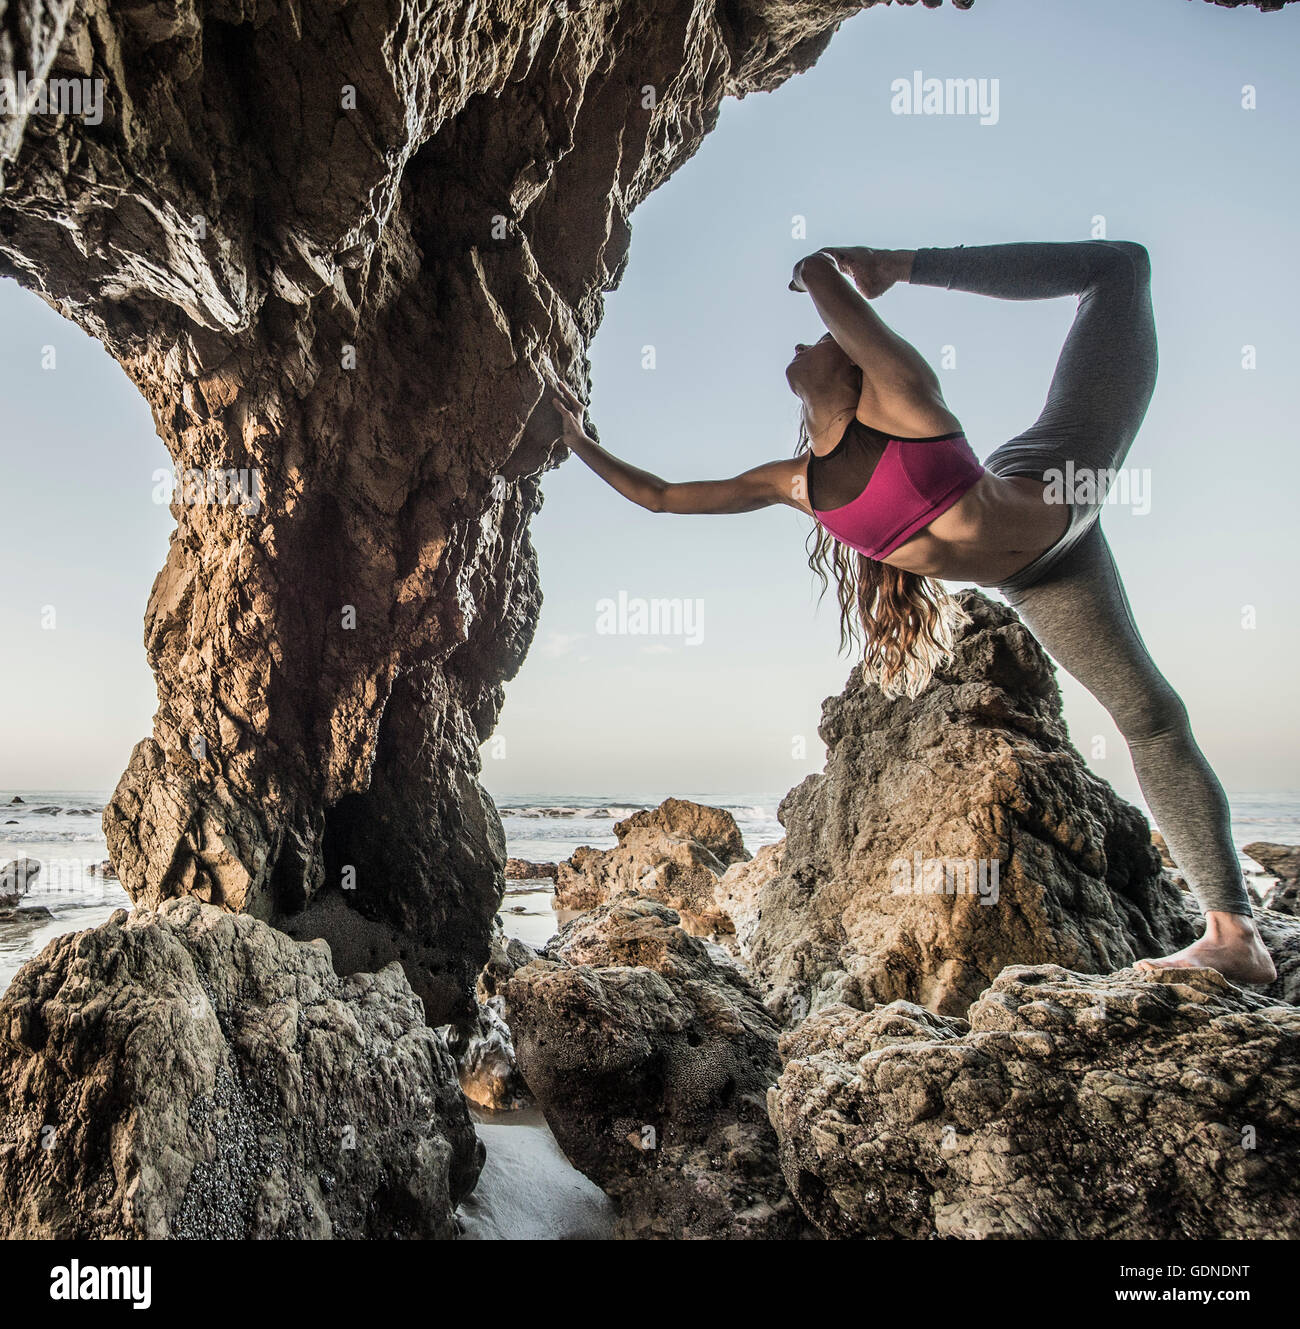 Jeune danseuse en équilibre sur une jambe en mer agitée, Los Angeles, Californie, USA Banque D'Images